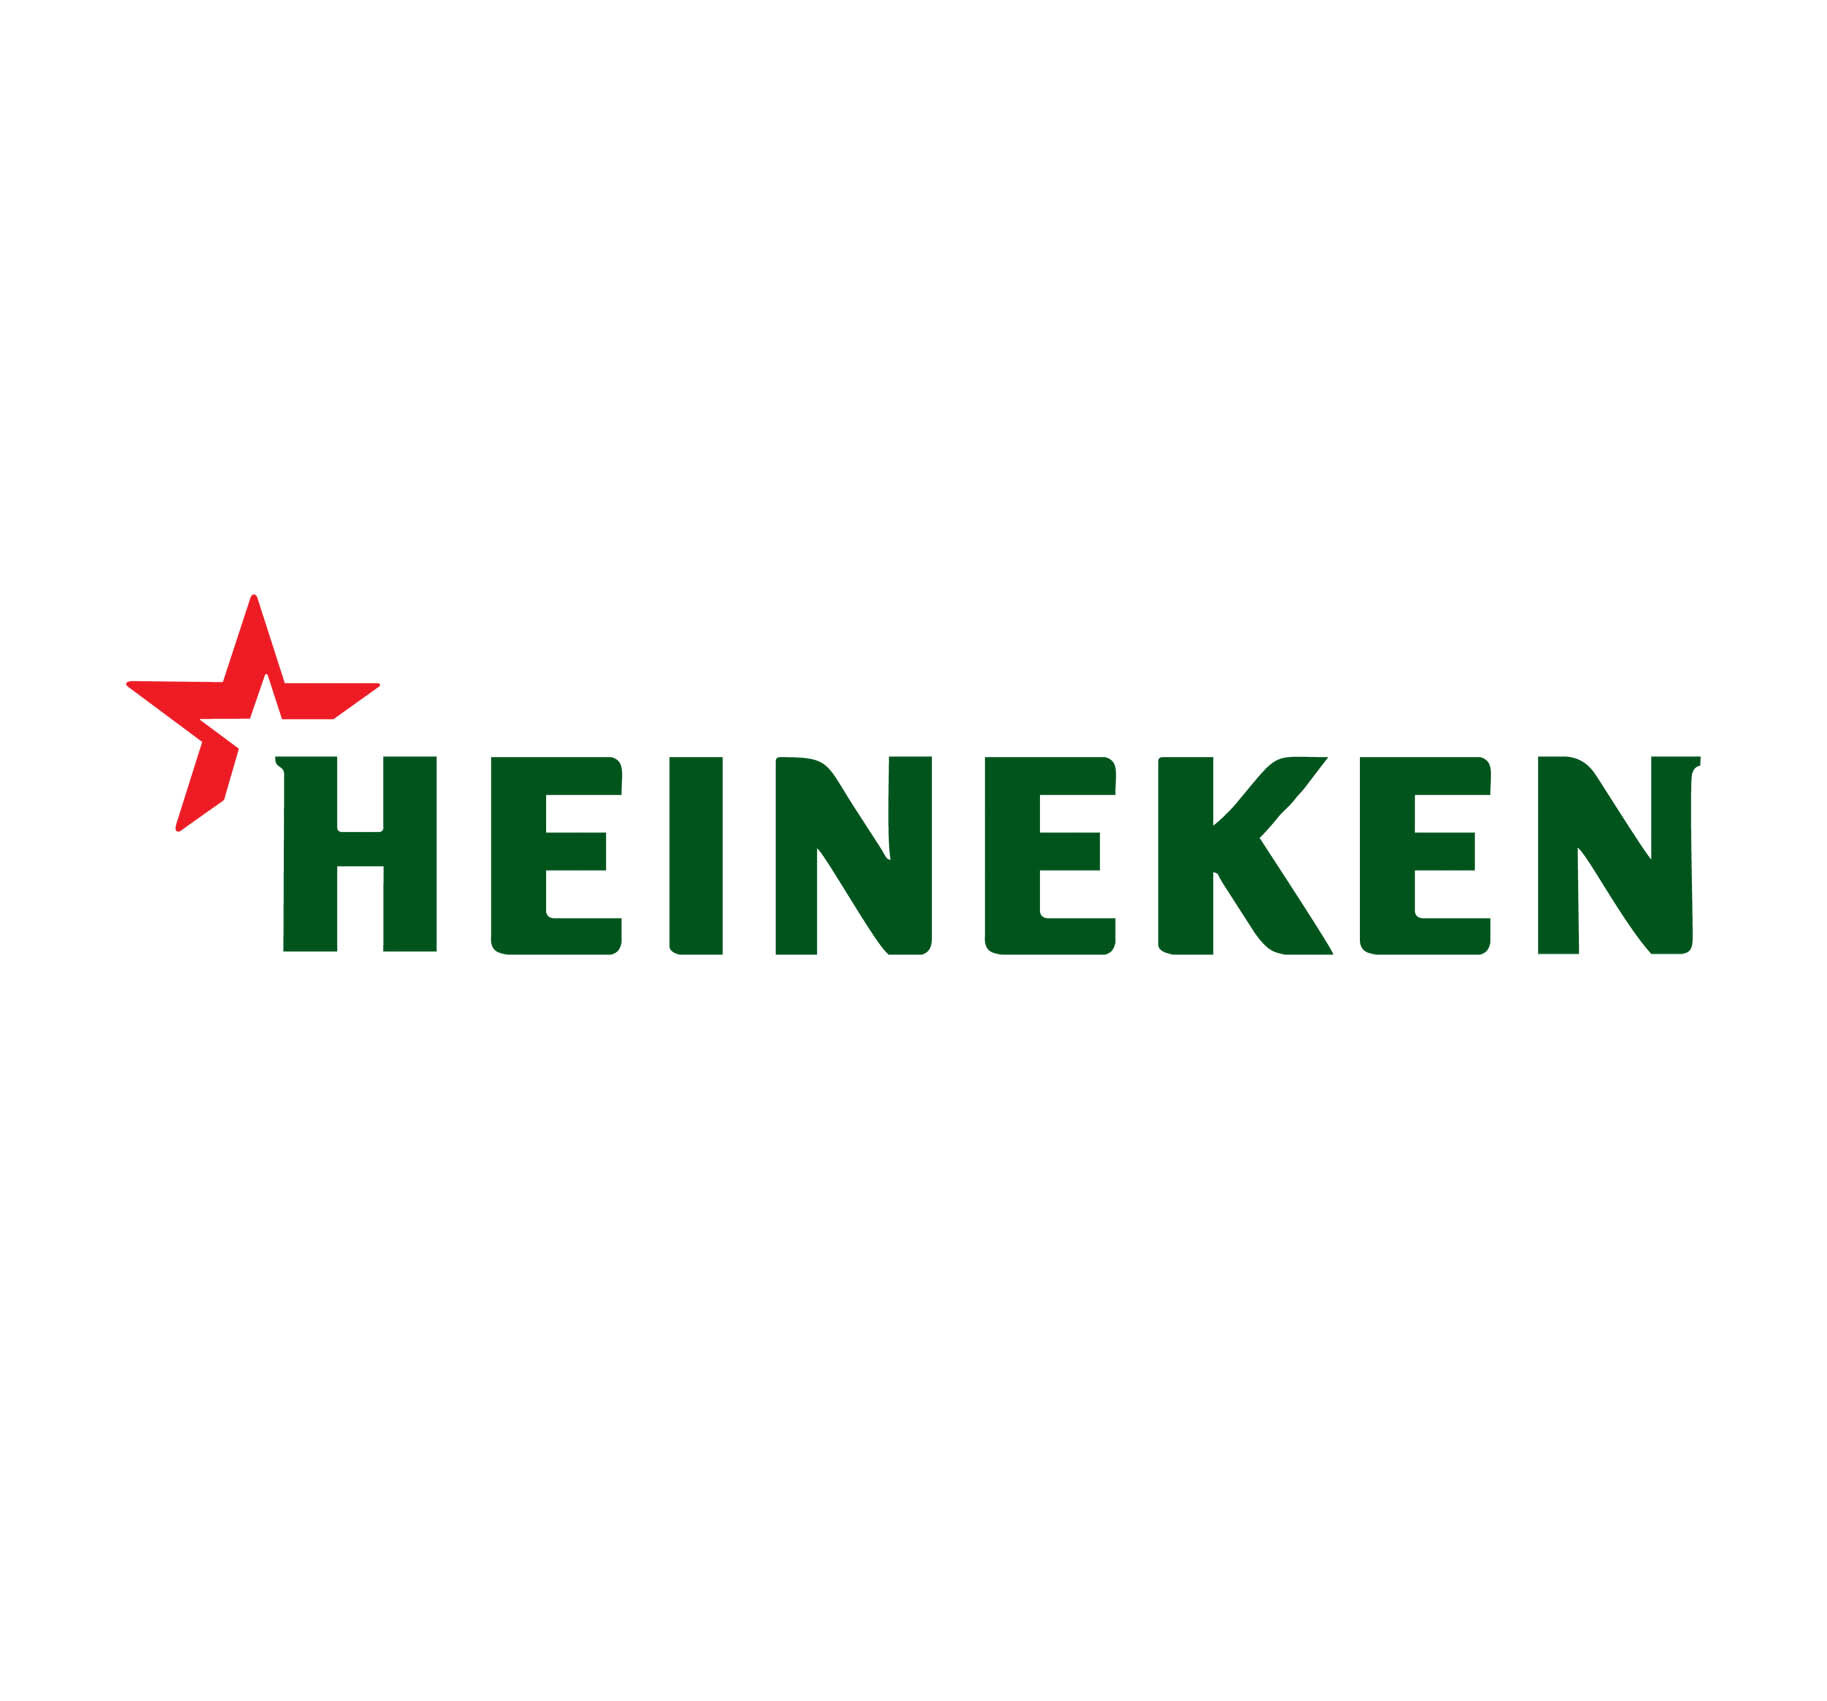 Heineken logo.jpg